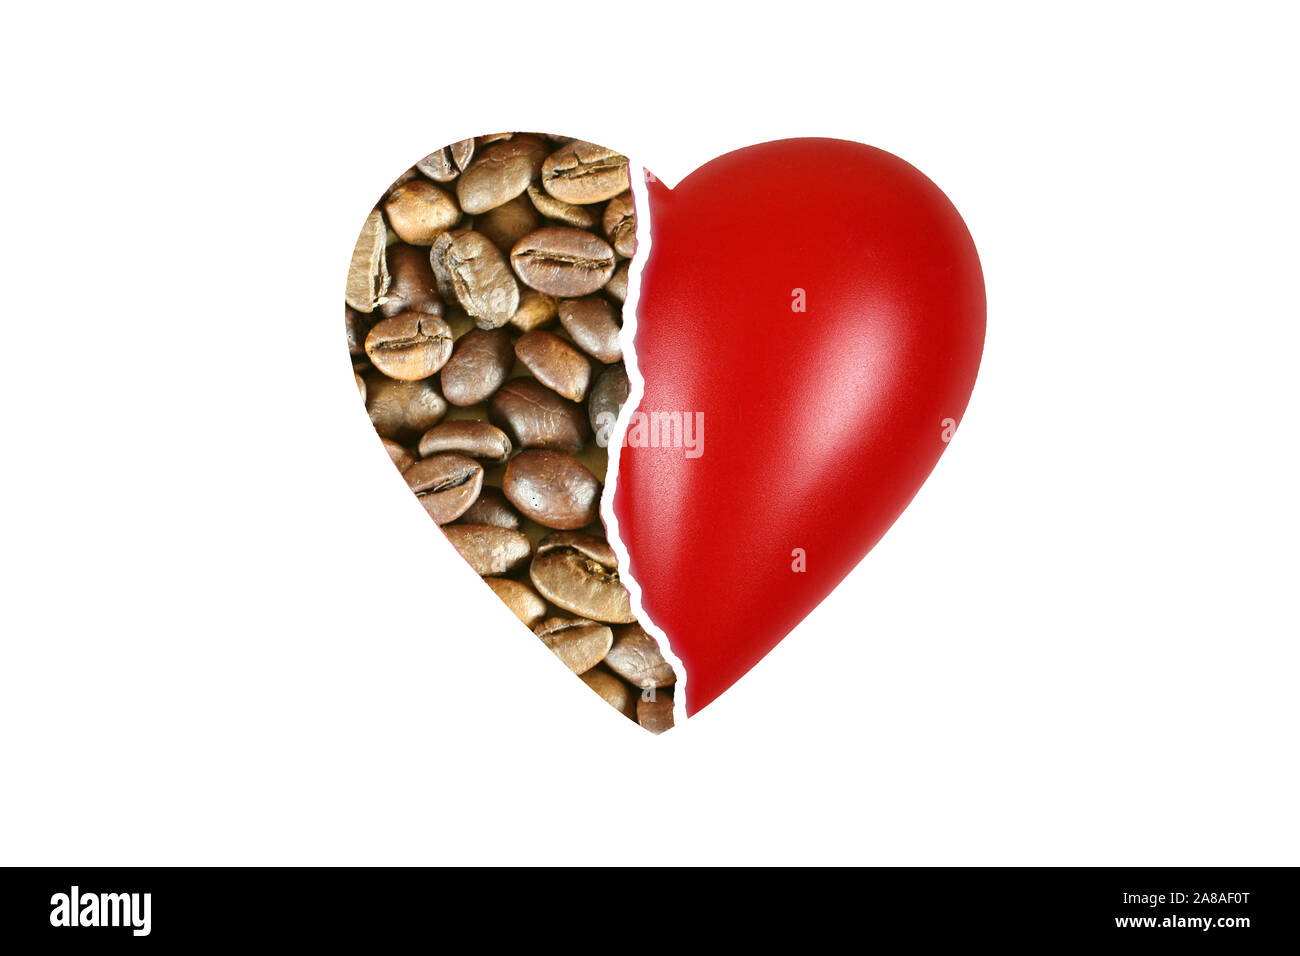 Rotes Herz, Organ, Gesundheit, Körperteil, Gebrochenes Herz, zu viel Kaffee, Coffein, Herzprobleme, Stock Photo